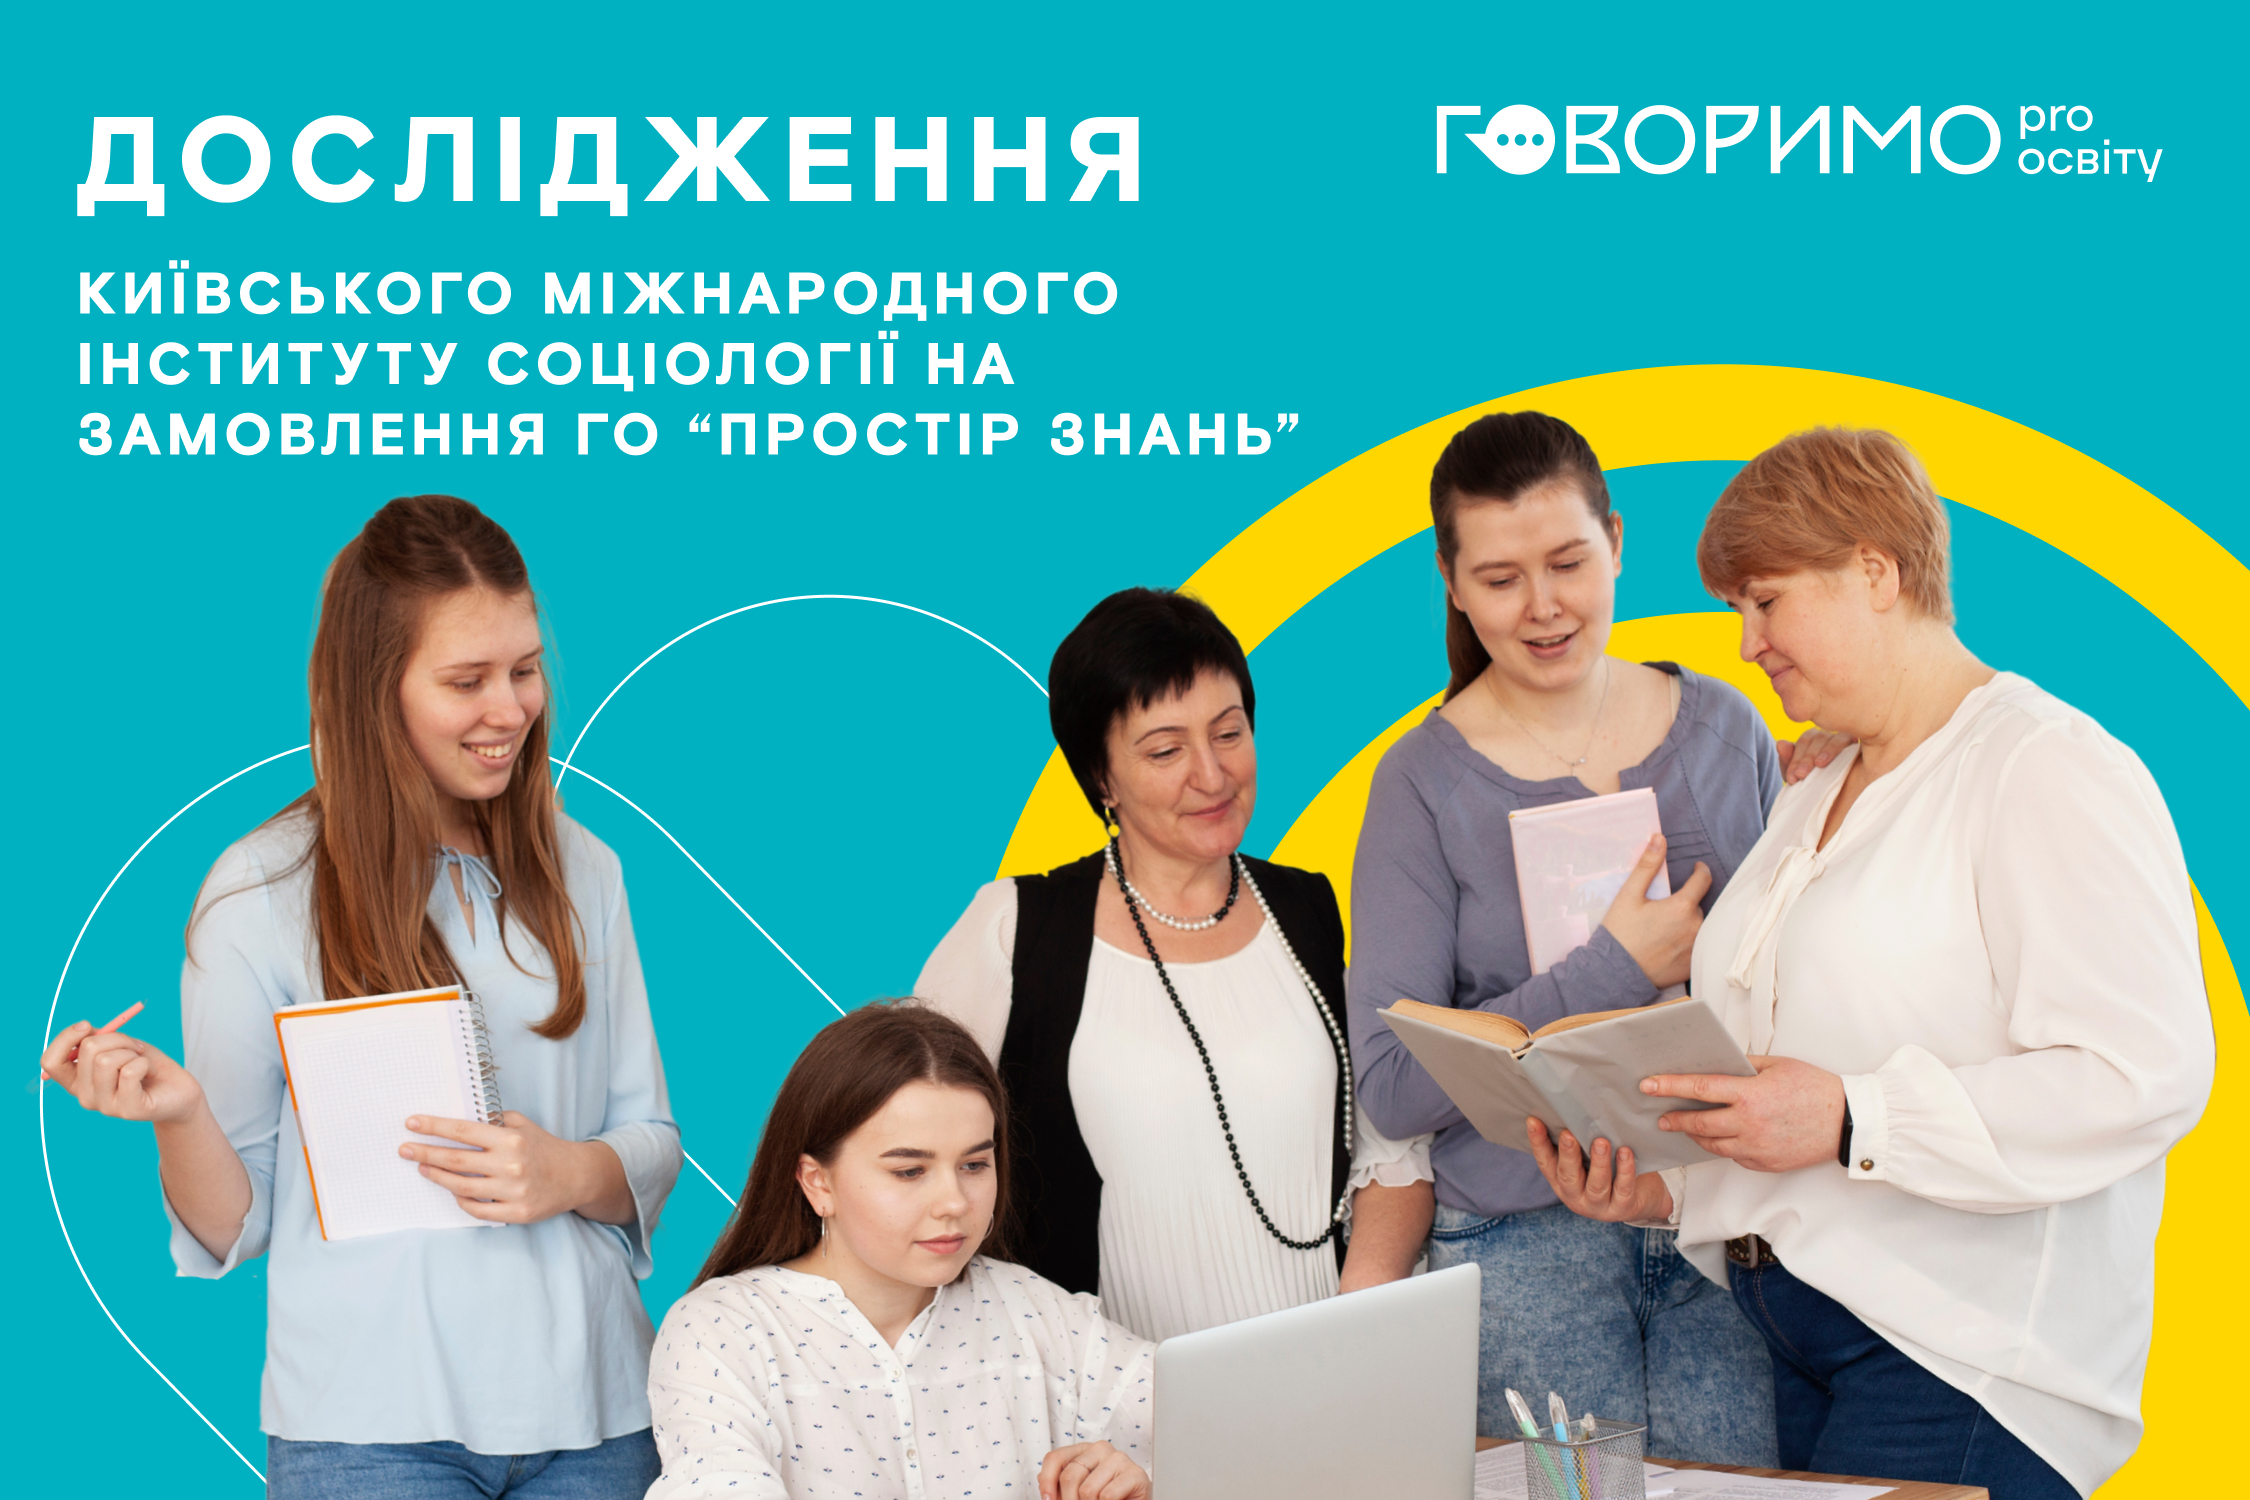  Українські школярі перевантажені: опитування image